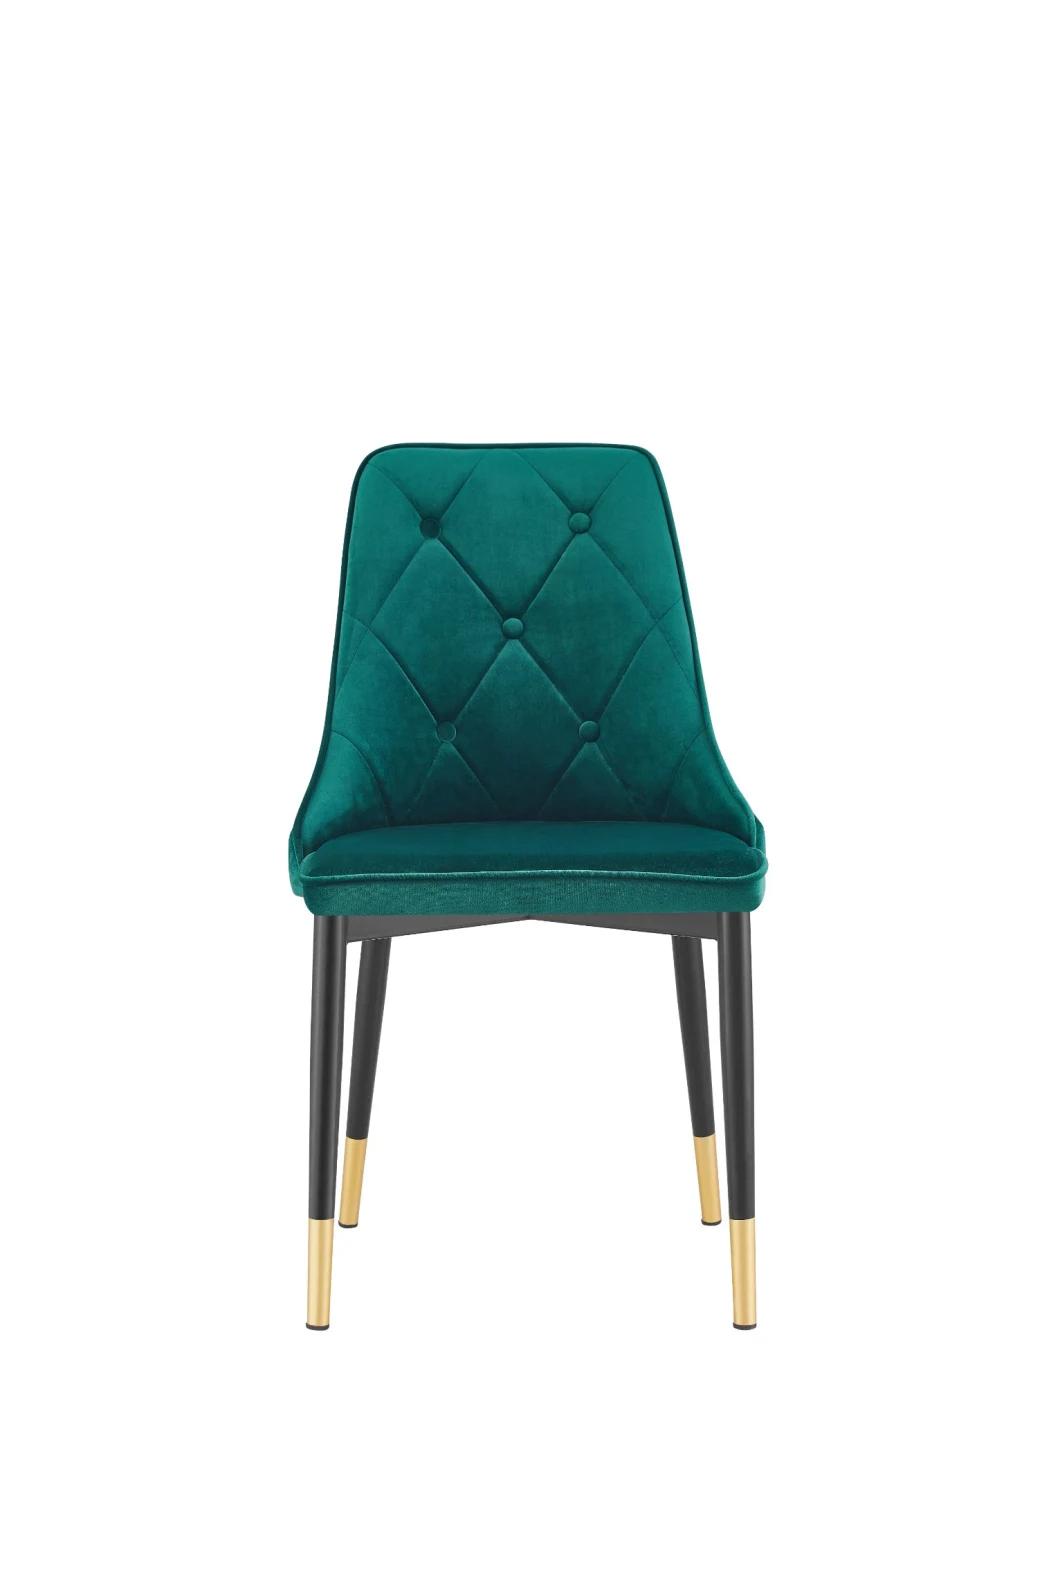 Hot Selling Velvet Home Furniture Metal Leg Dining Chair Armless Restaurant Chair